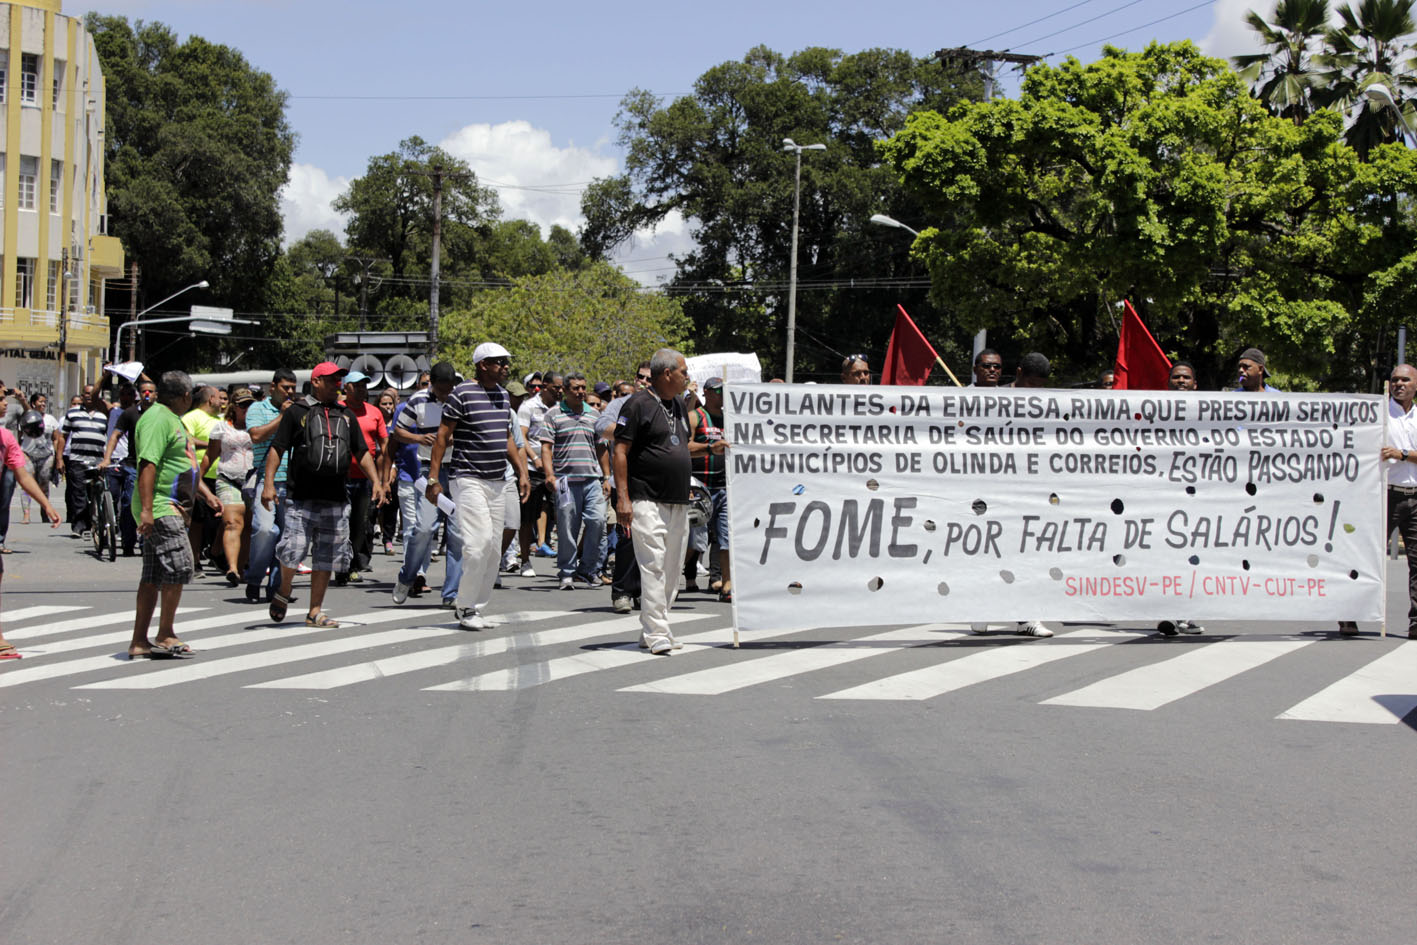 Vigilantes protestam contra salários atrasados no Palácio do Governo, em Recife (PE)